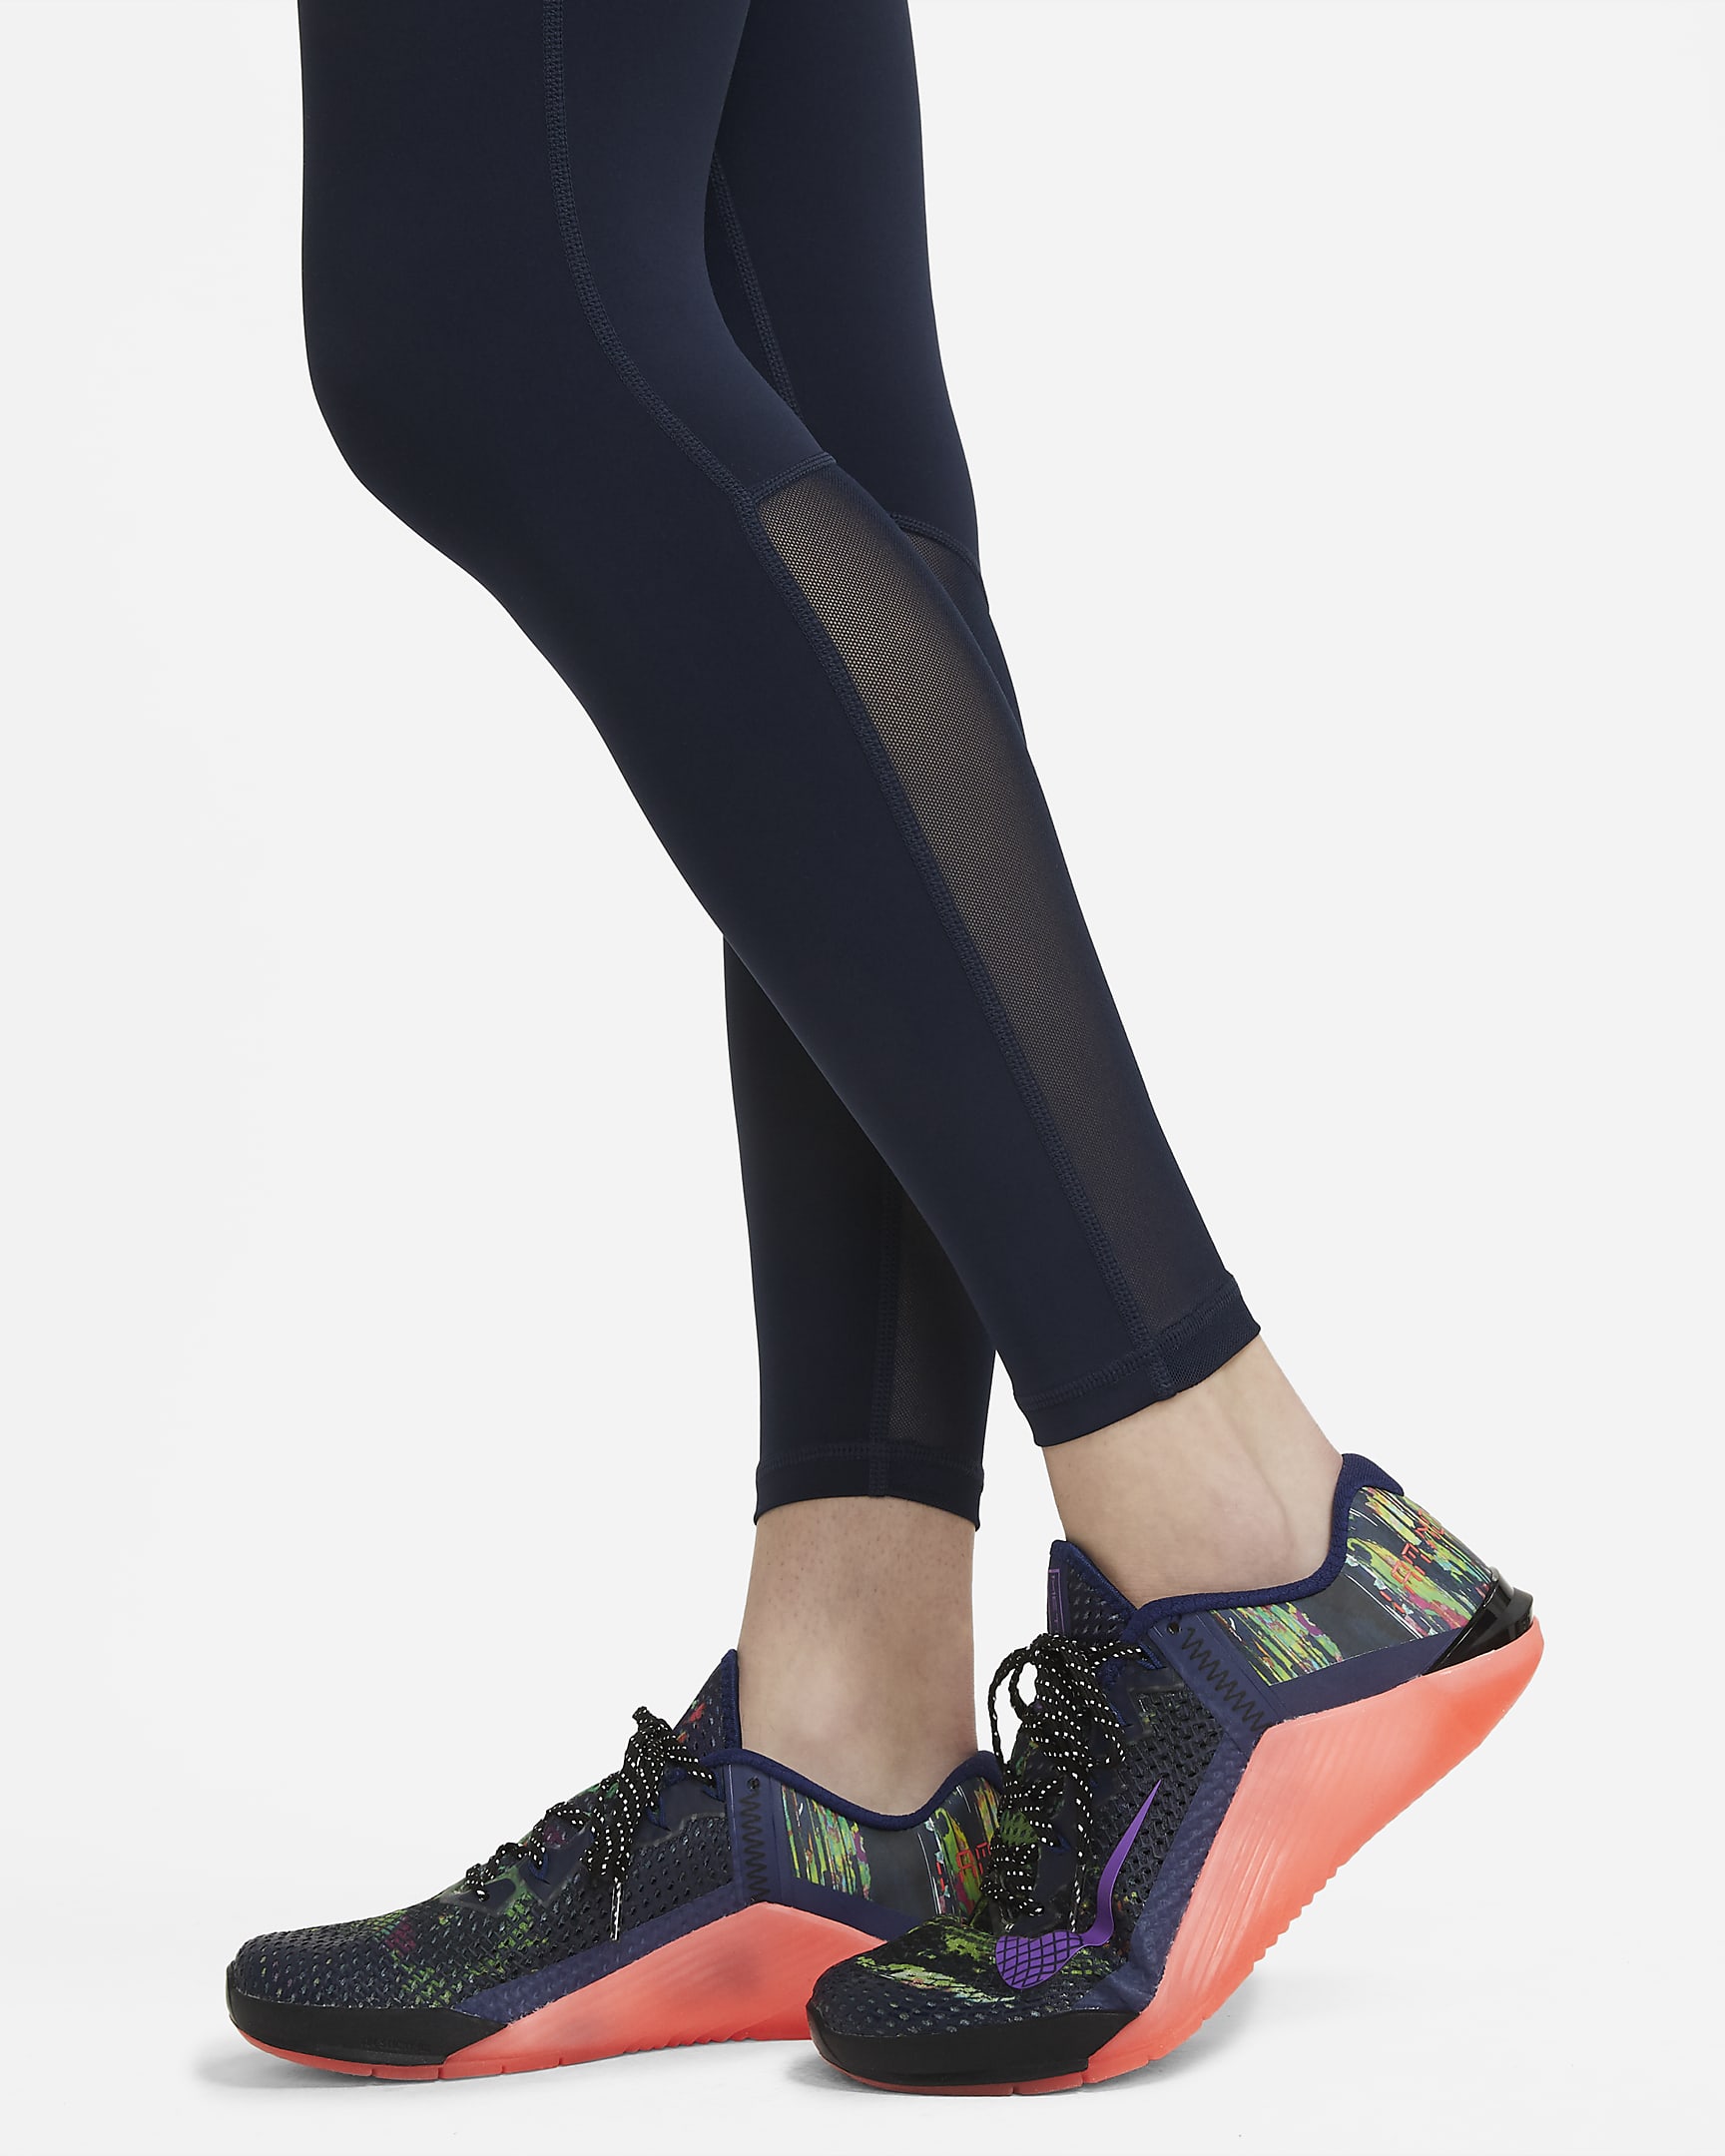 Nike Pro Women's Mid-Rise Mesh-Panelled Leggings - Obsidian/White